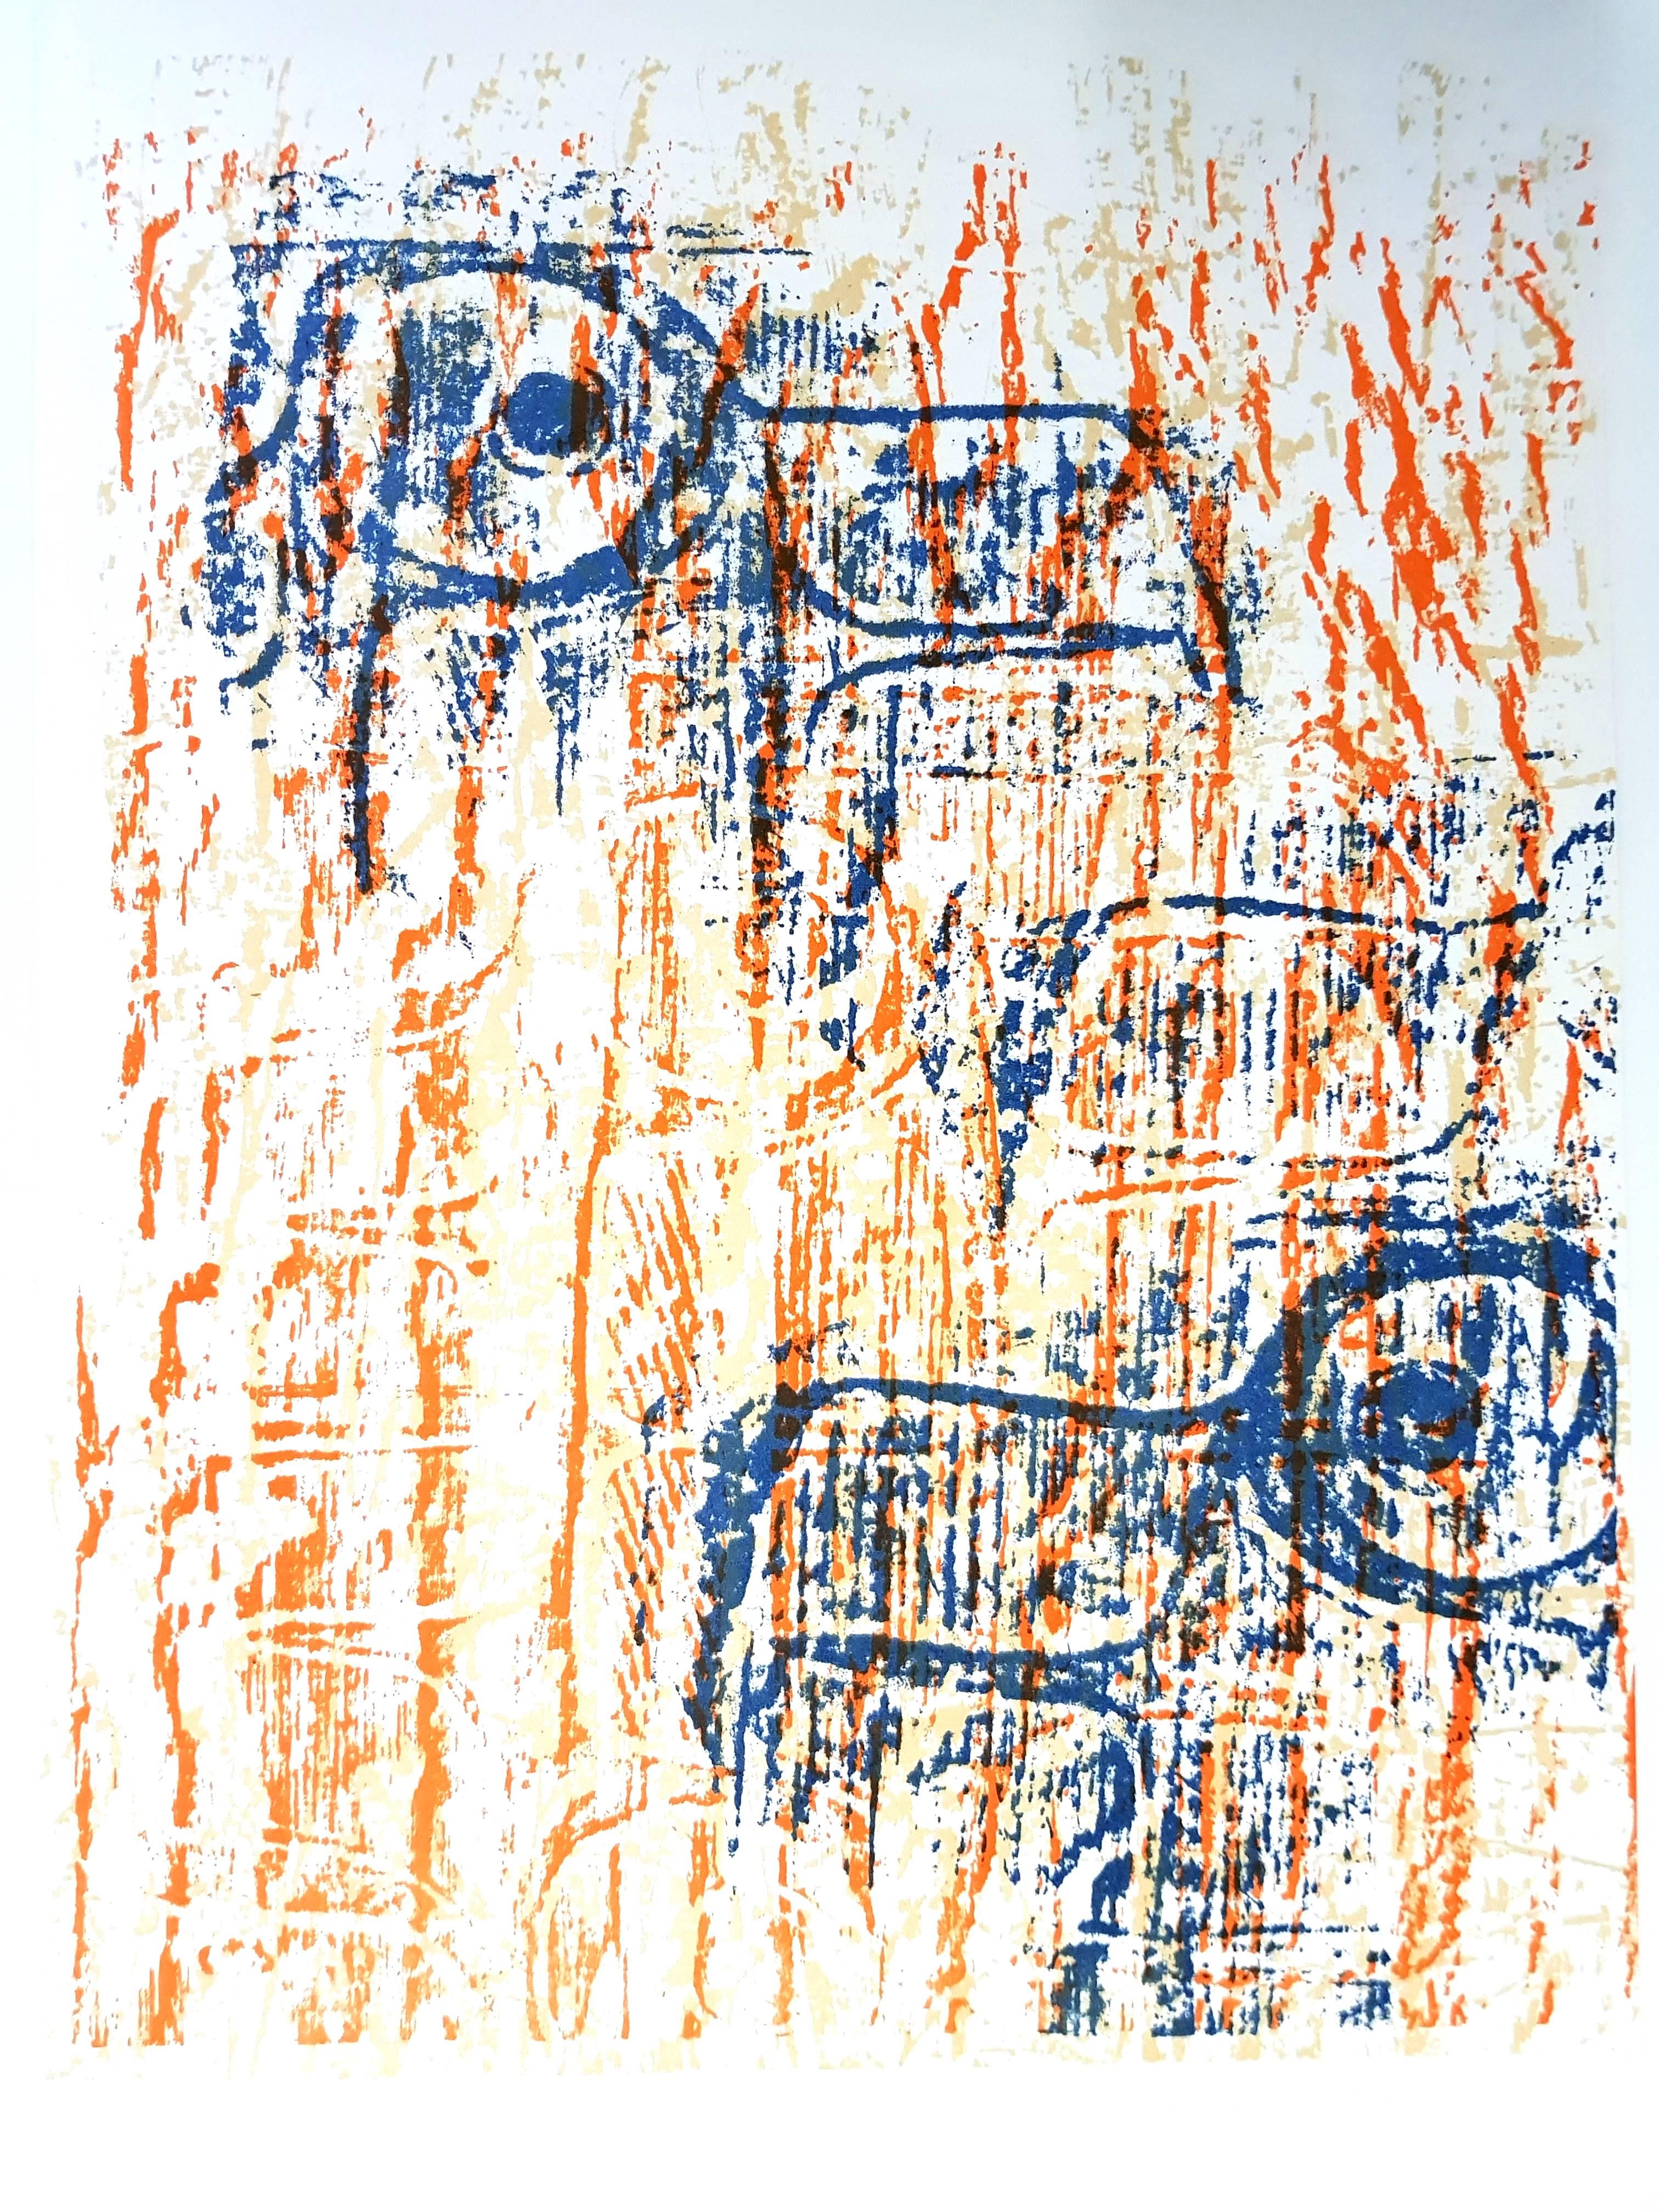 Max Ernst - Oiseaux -  Lithographie originale
Oiseaux, 1964 (BNF, 63) 
Dimensions : 32 x 24 cm
Revue Art de France

ax Ernst est né à Bruhl, un endroit près de Cologne, en Allemagne. Il a été élevé dans une famille catholique stricte, et ses deux